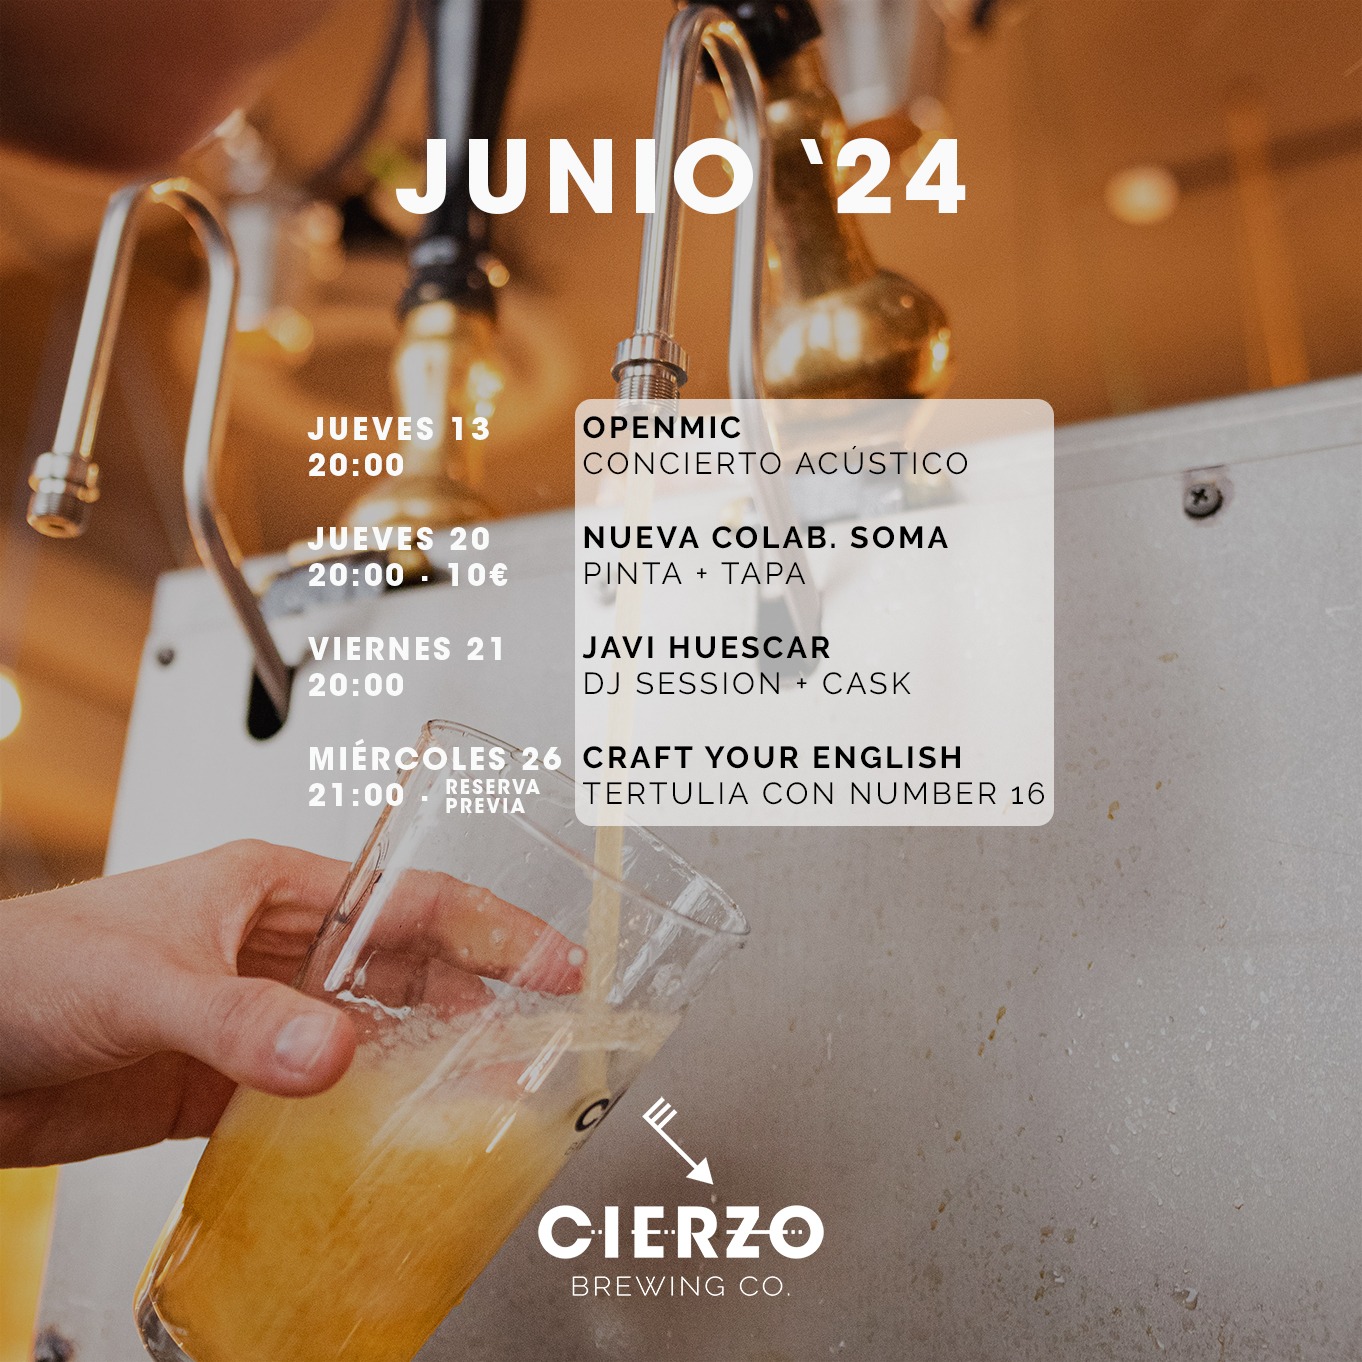 catas de cerveza, cenas y otros eventos en nuestro brewpub de Zaragoza